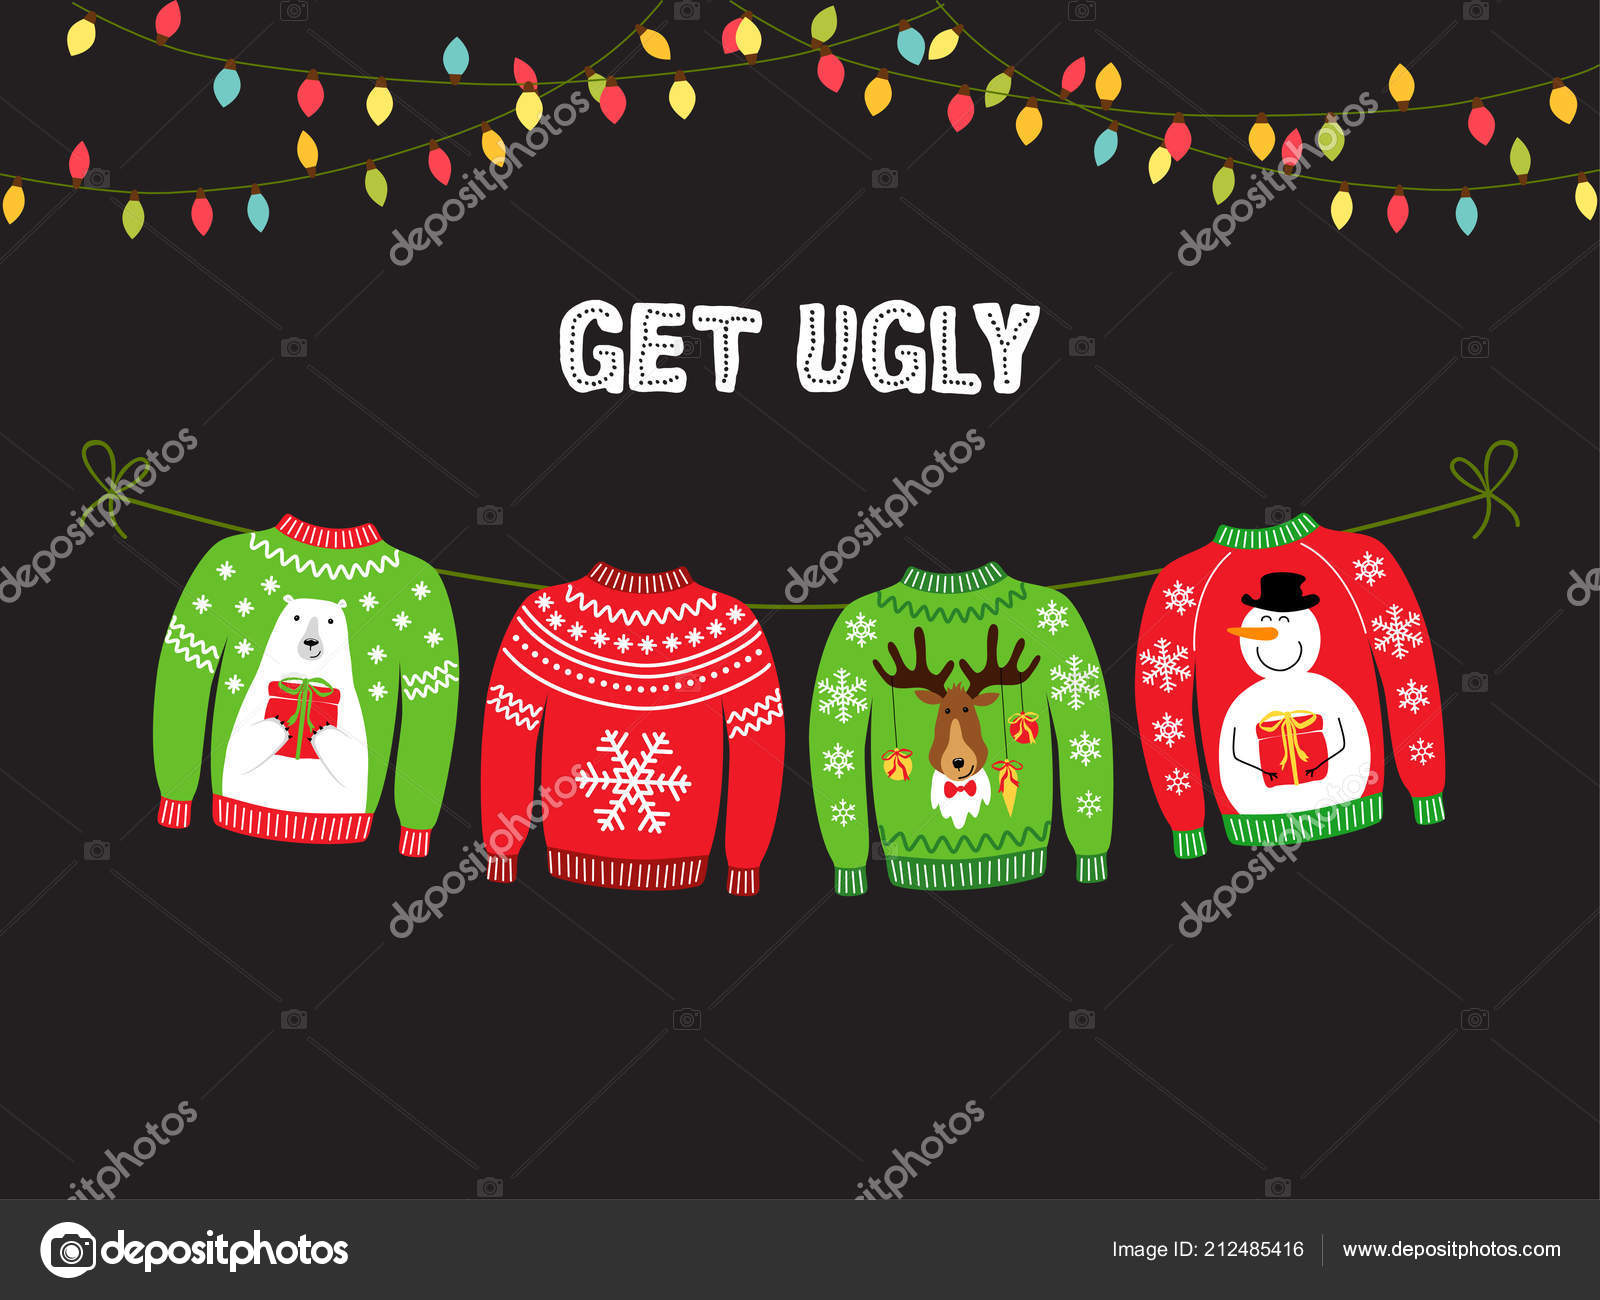 Hình ảnh vector áo len Giáng sinh xấu xí sẽ làm cho bất kỳ dự án nào của bạn thêm phần phong phú và độc đáo hơn. Chúng tôi mang đến cho bạn những bộ vector áo len độc lạ, không giống với những gì bạn đã từng thấy trước đây và khiến bạn khó lòng rời mắt.